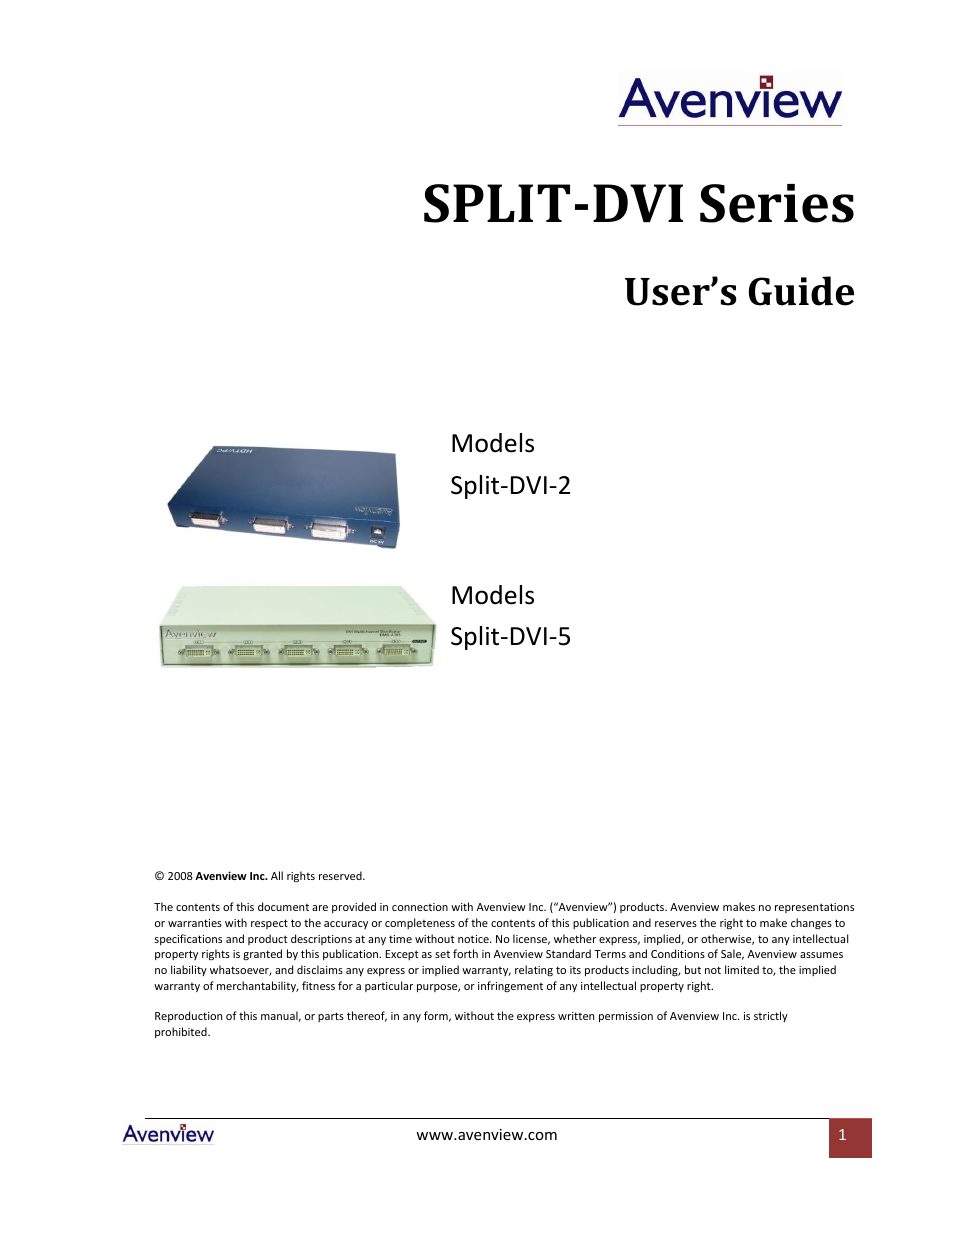 SPLIT-DVI Series SPLIT-DVI-5